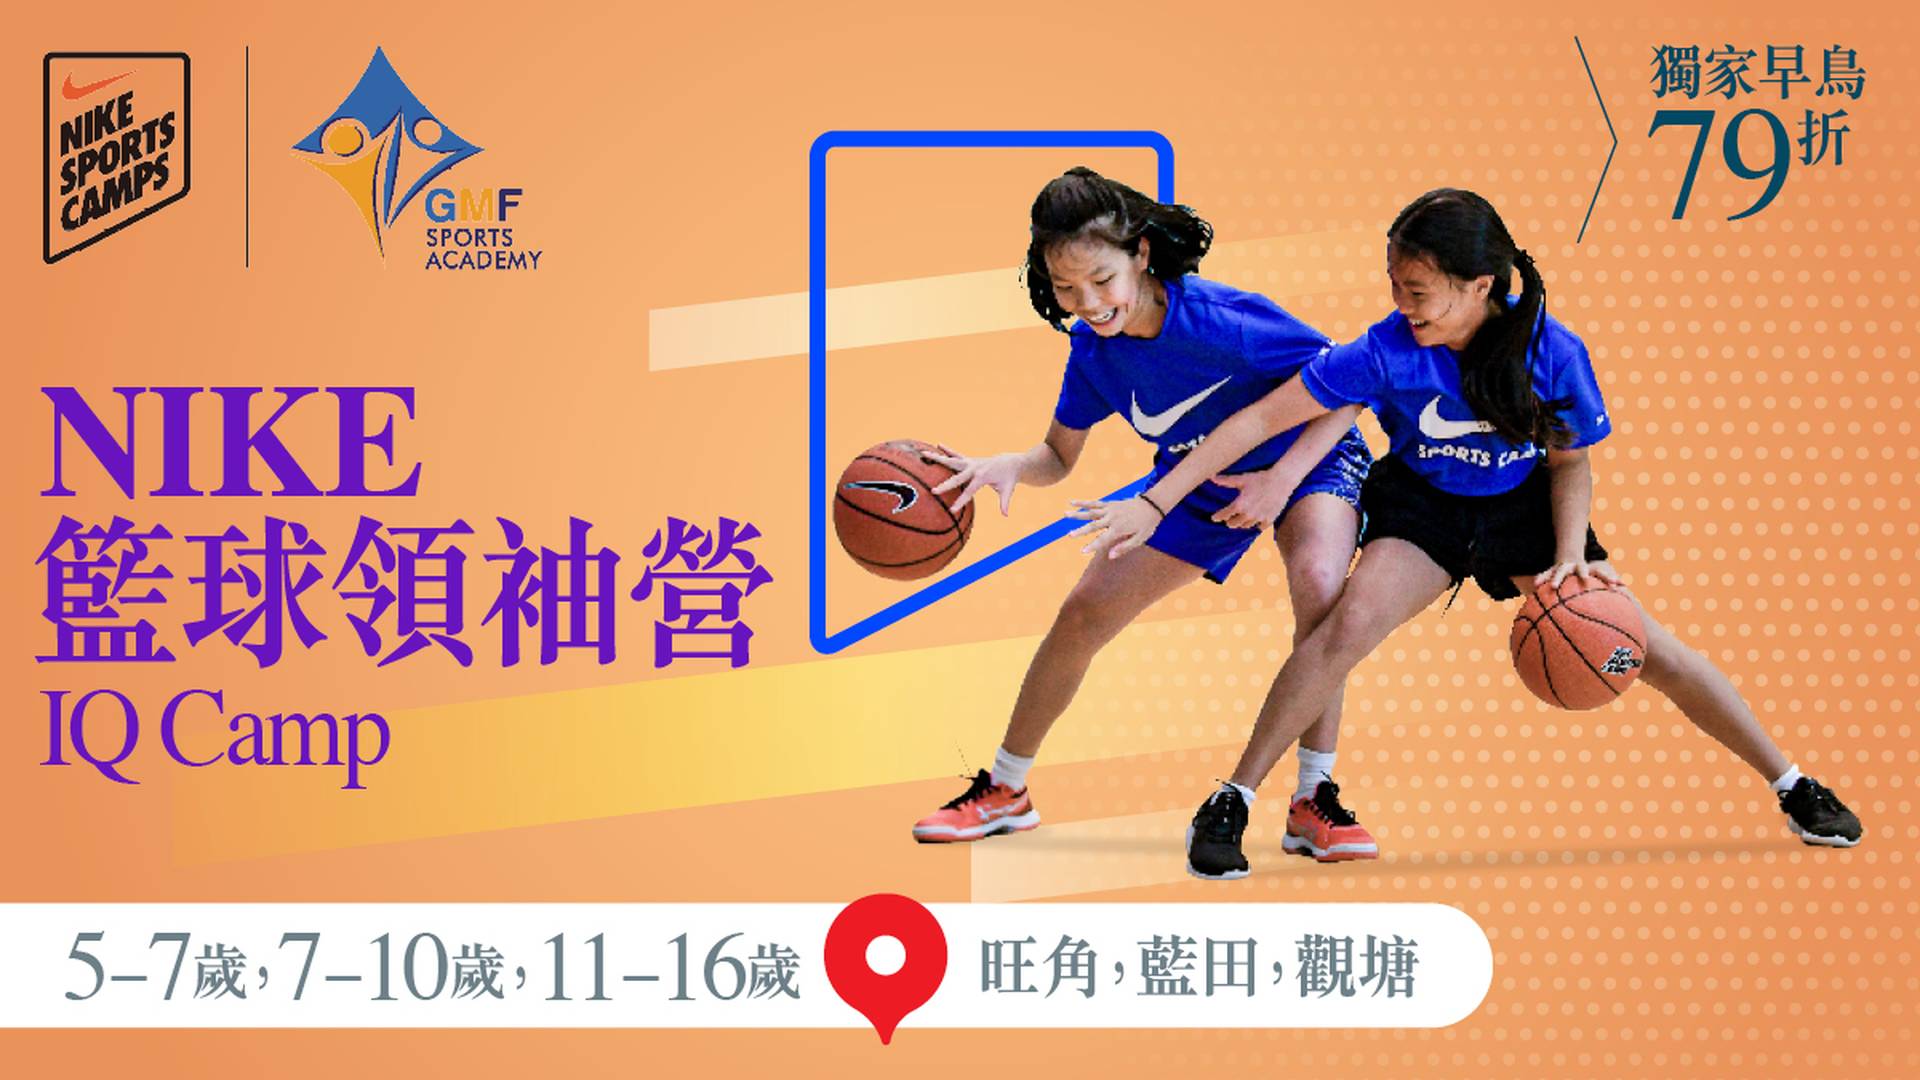 Nike Basketball IQ Camp 籃球領袖營 2023 (5 - 7歲, 7 - 10歲 及 11 -16歲) (旺角、藍田、觀塘)｜獨家早鳥79折